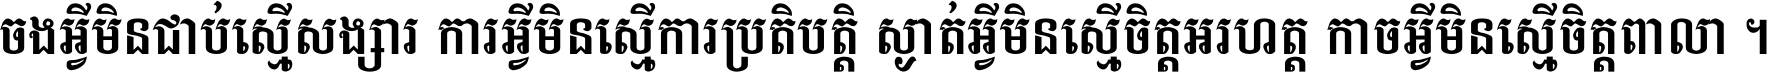 Khmer Chhay Text 4